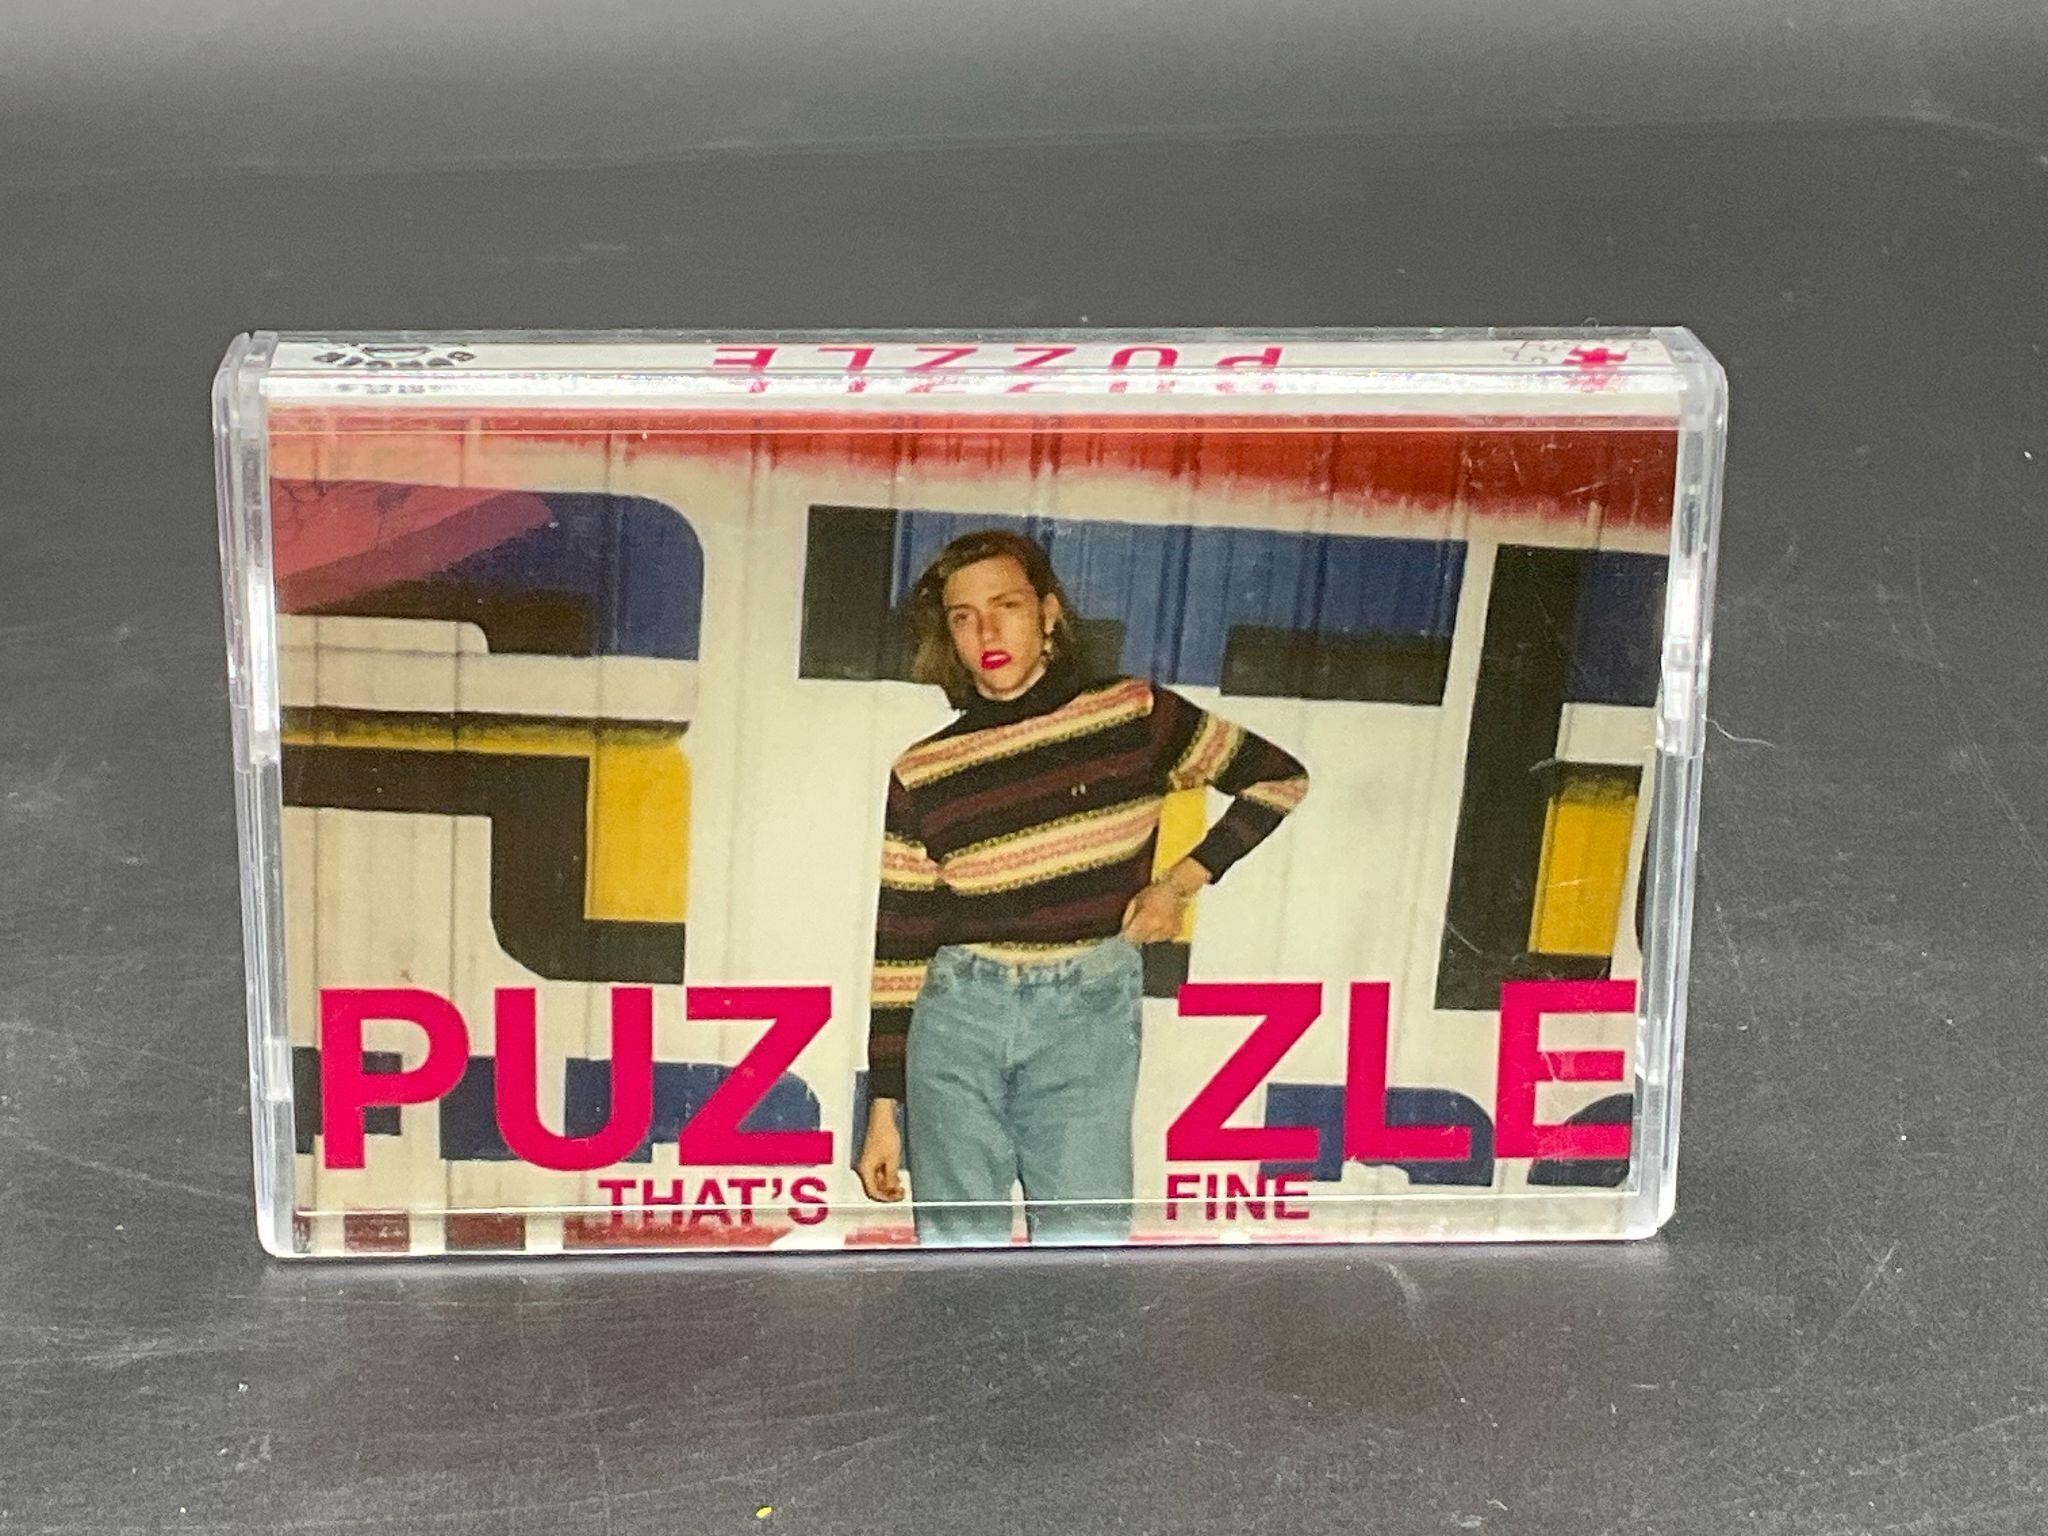 2013 Puzzle "That's Fine" Punk Lt Ed Cassette Tape